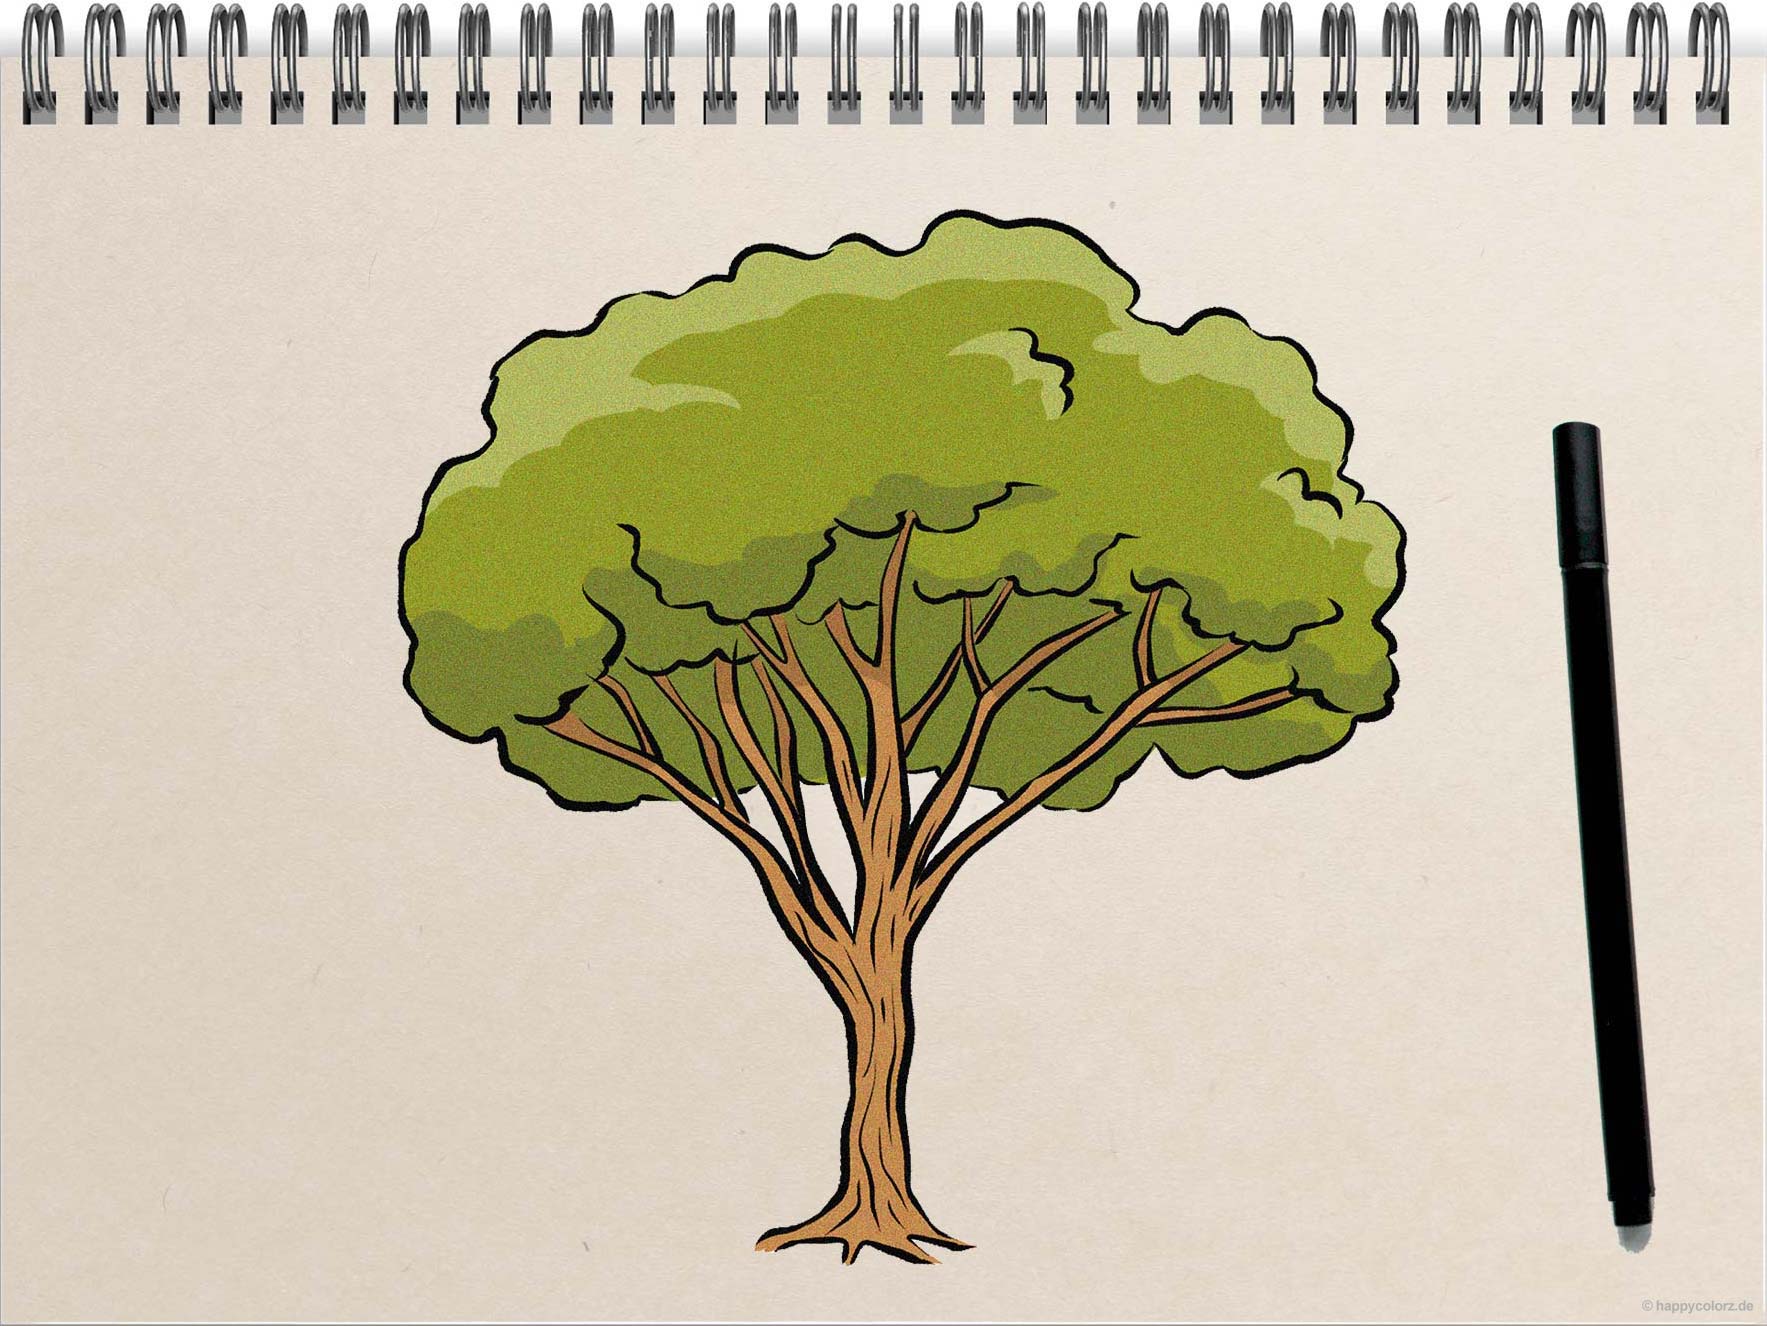 Baum zeichnen - Schritt-für-Schritt Anleitung mit Vorlagen